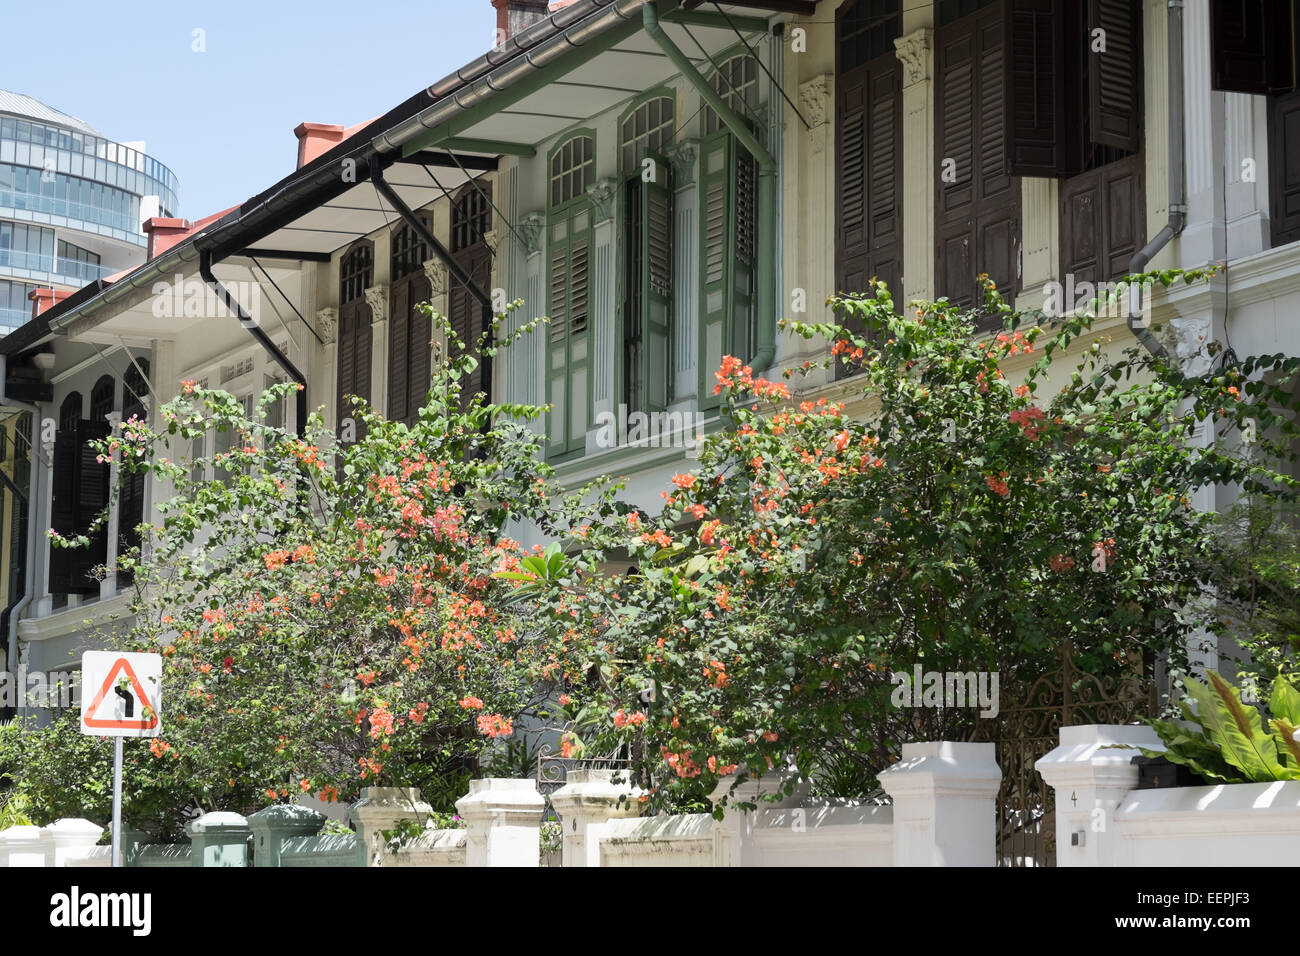 Architettura coloniale nel centro storico di Colle smeraldo in Singapore. Foto Stock